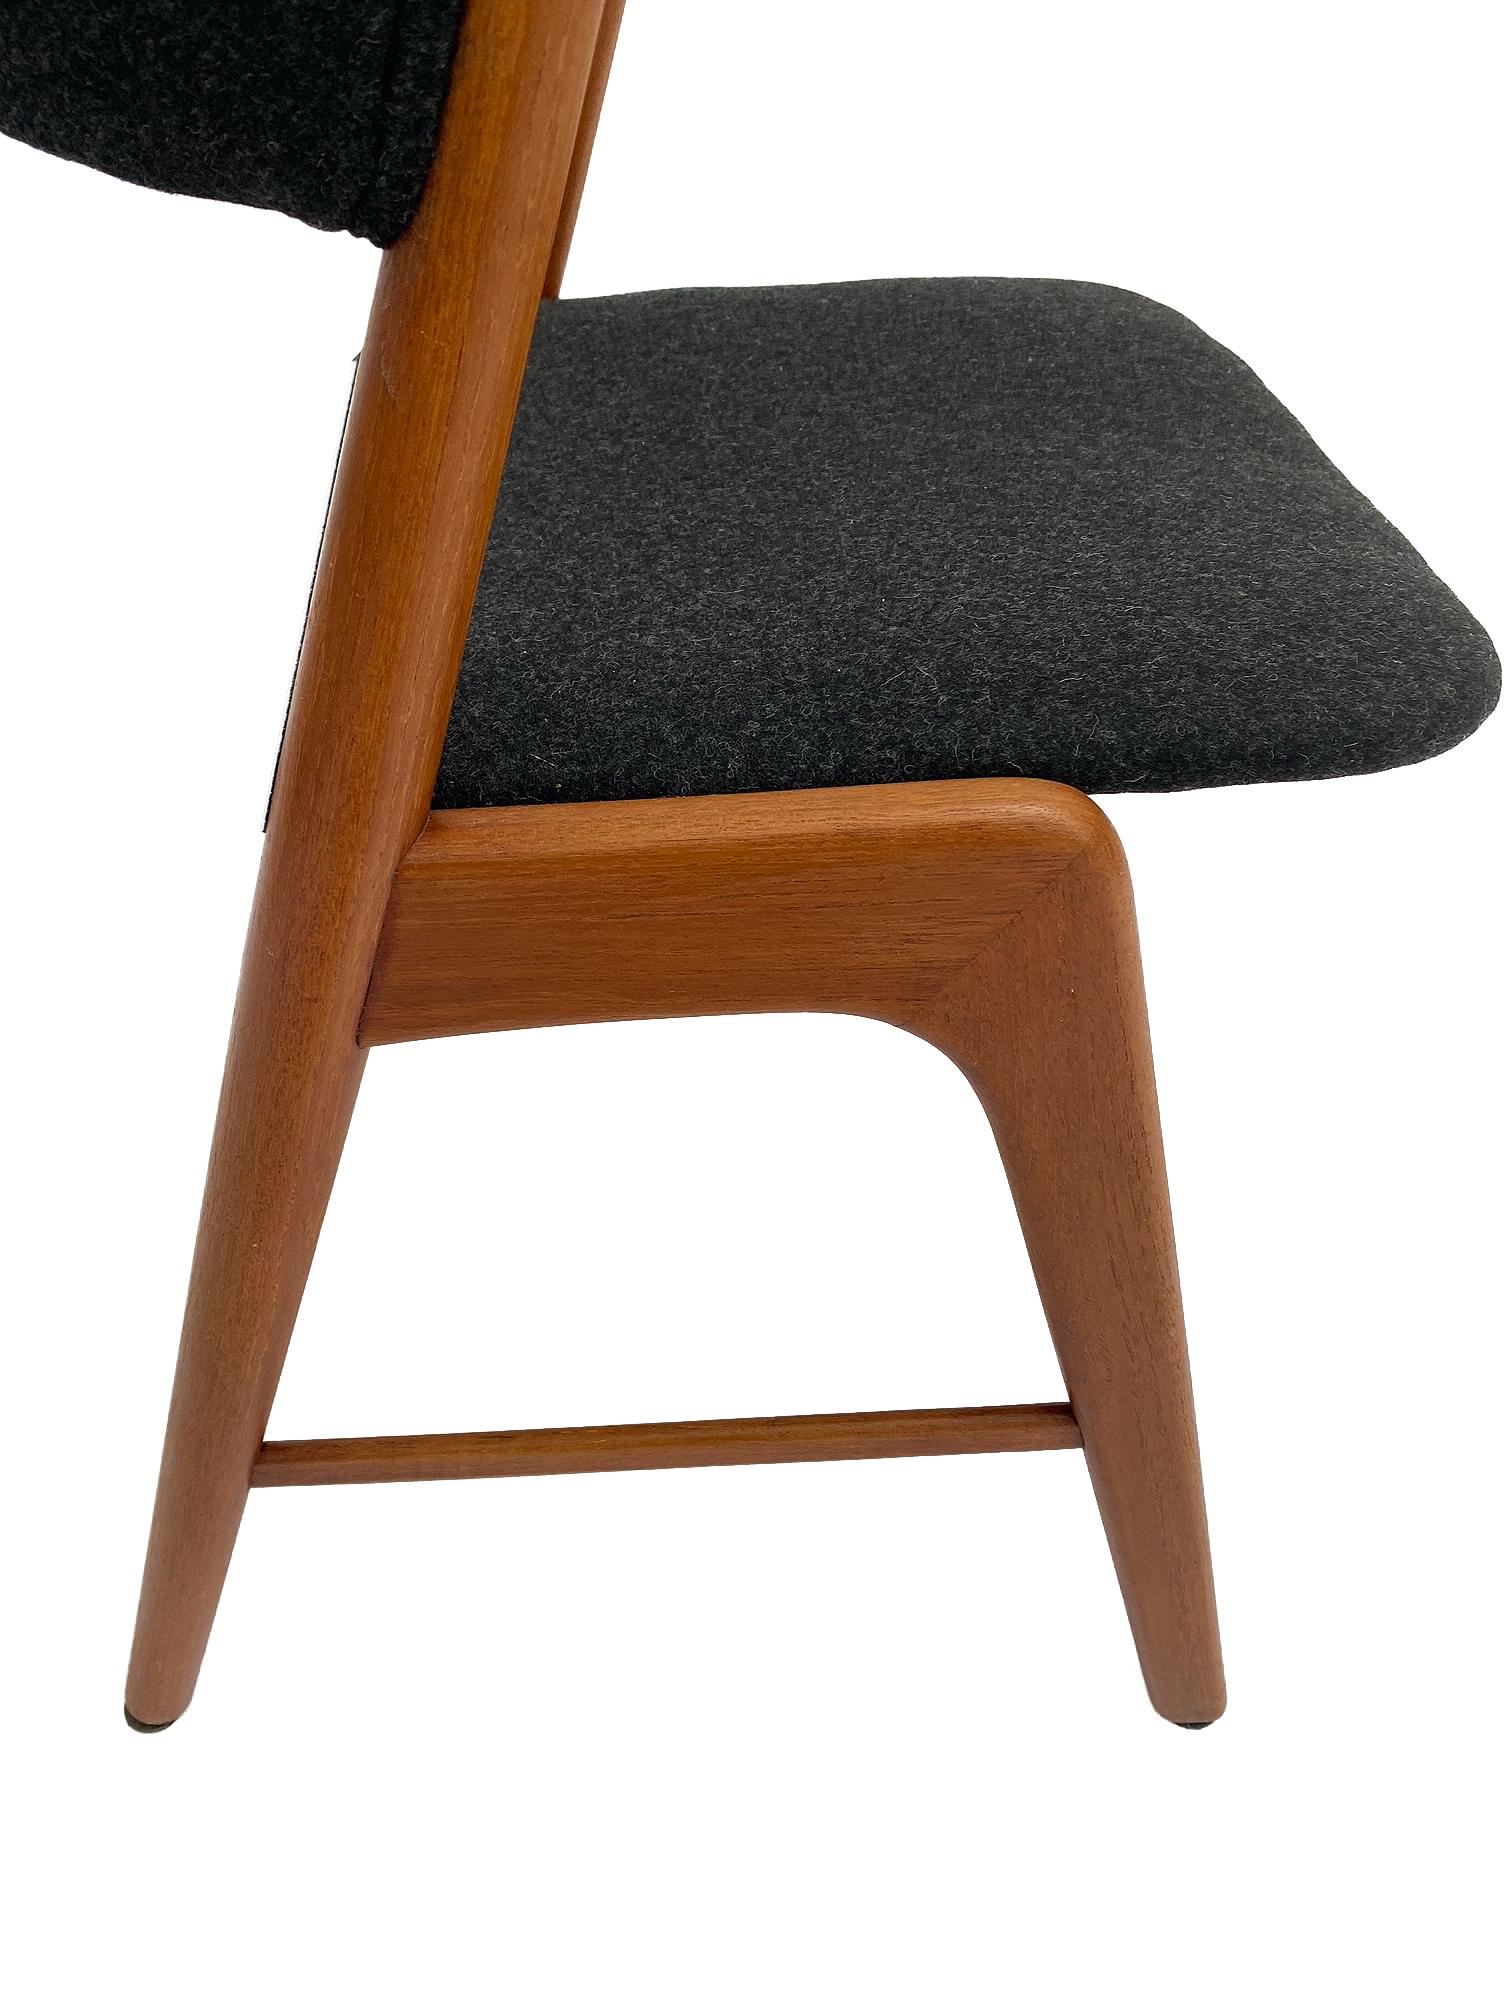 Kai Kristiansen Model 32 Teak and Charcoal Wool Desk Chair, Denmark, 1960s 11